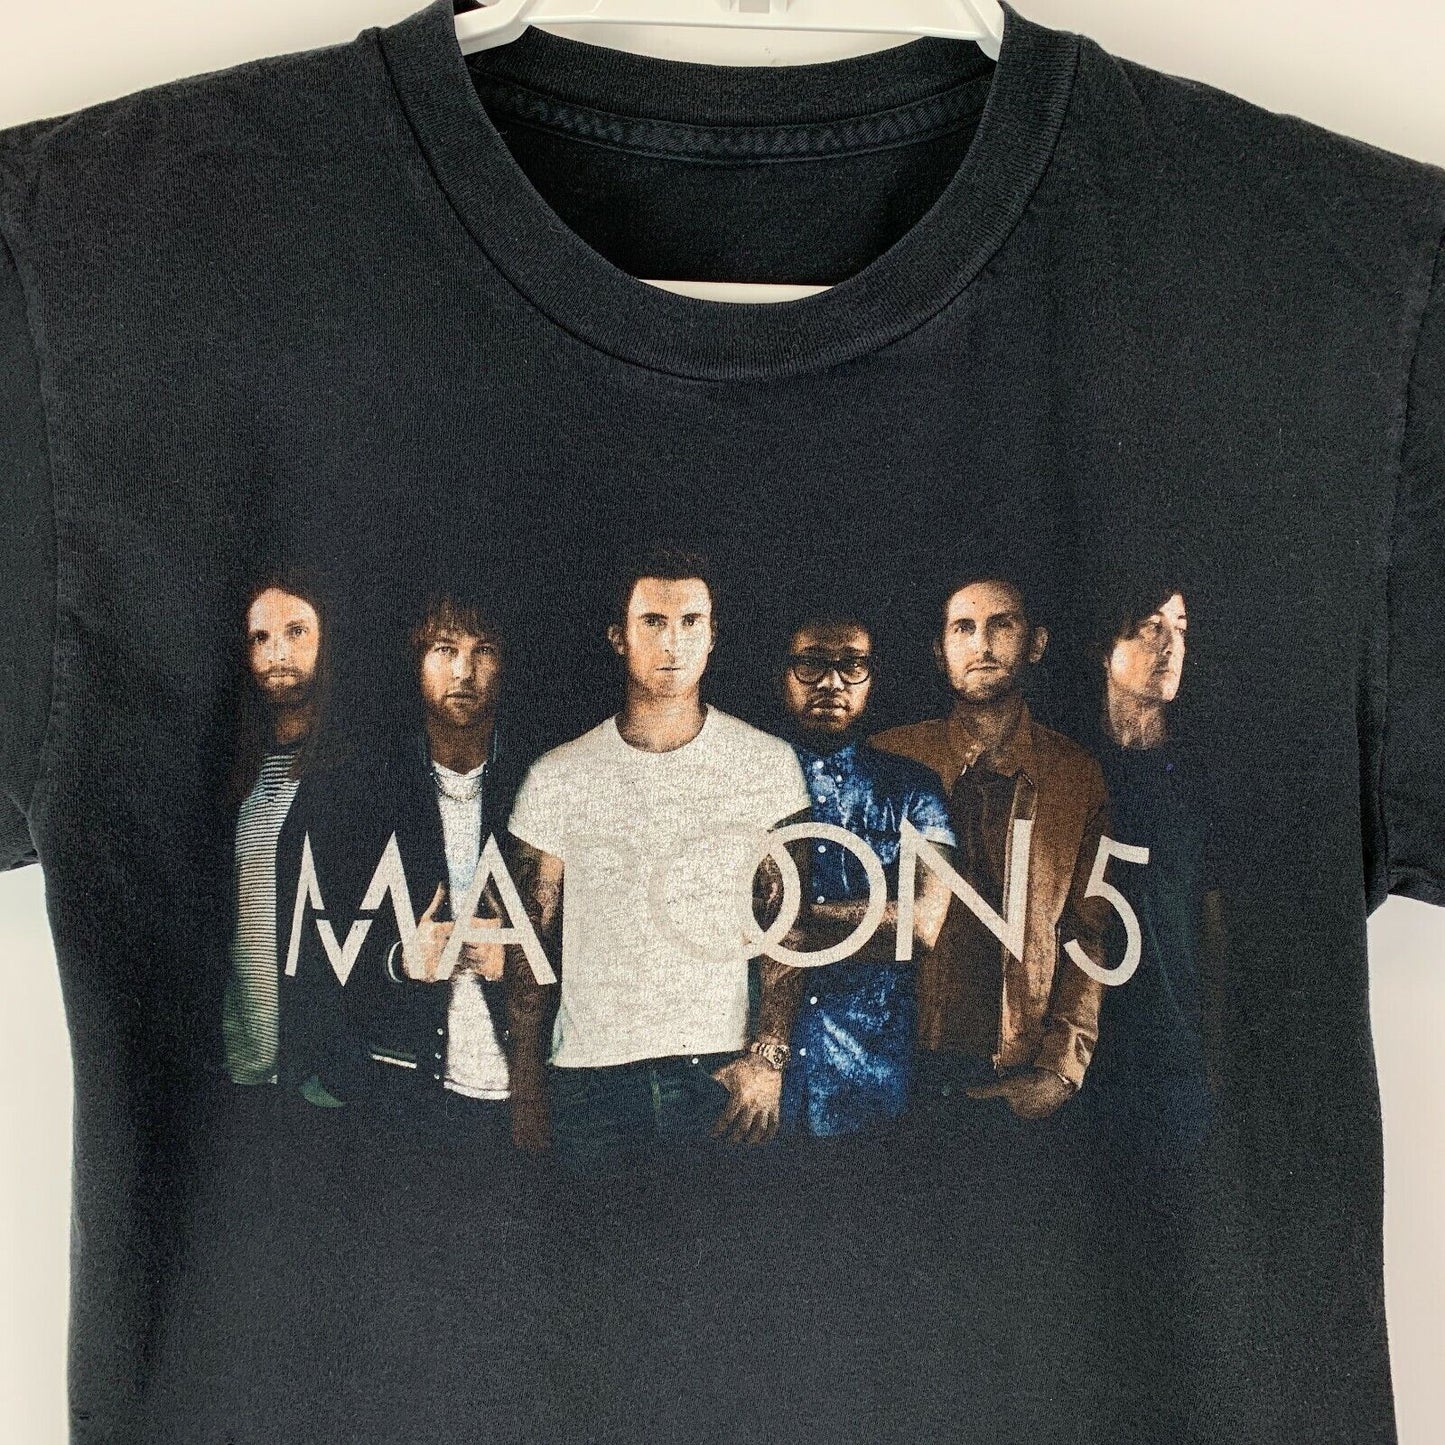 2016-2017 Maroon 5 巡演 T 恤流行摇滚乐队音乐会黑色图案 T 恤小号